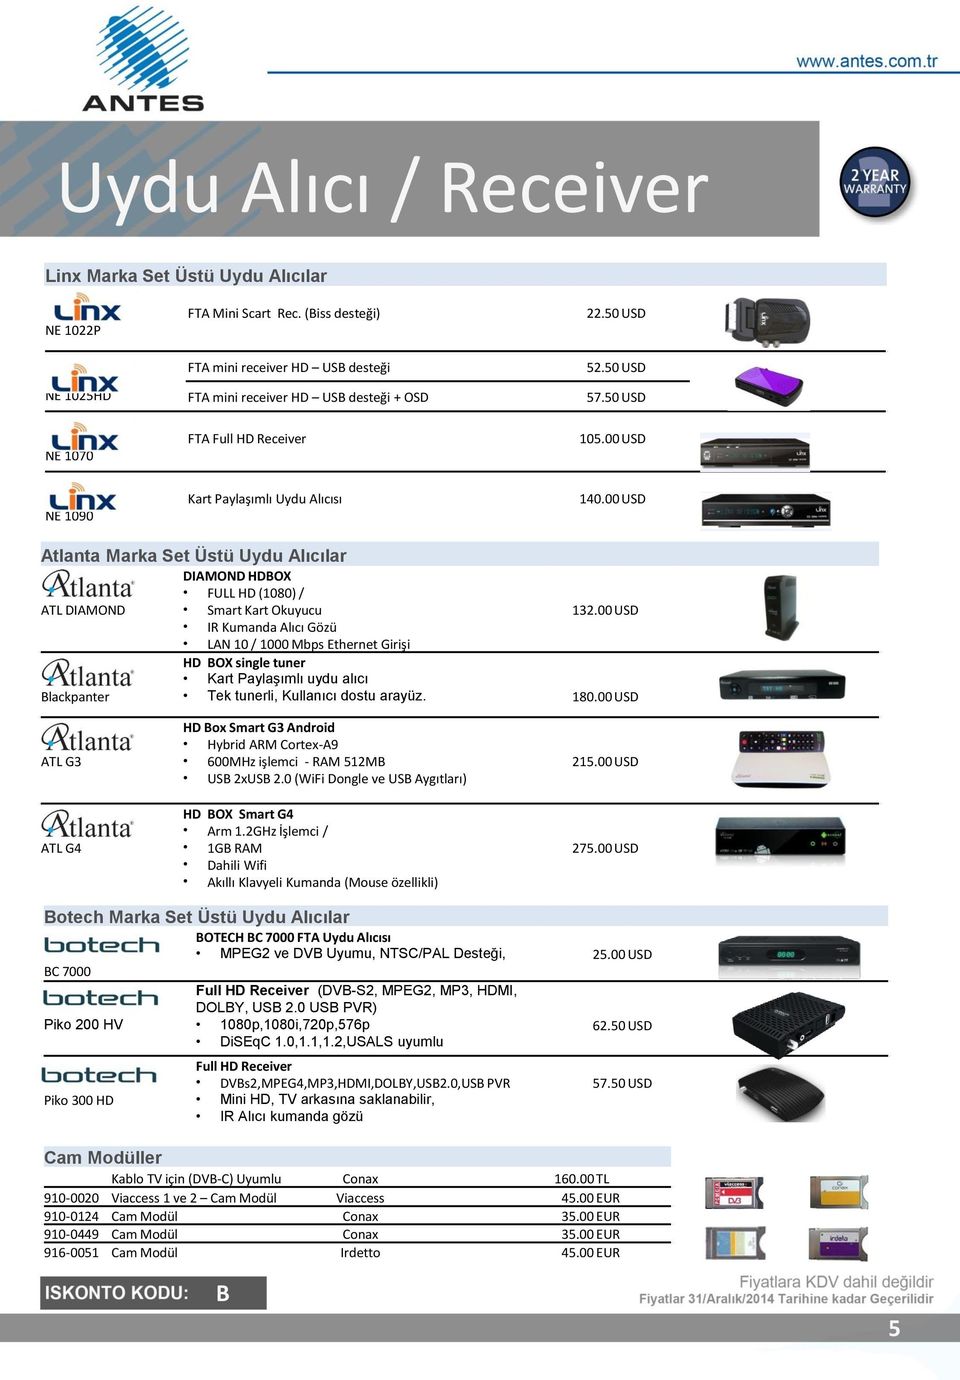 00 USD IR Kumanda lıcı Gözü LN 10 / 1000 Mbps Ethernet Girişi HD BOX single tuner Kart Paylaşımlı uydu alıcı Blackpanter Tek tunerli, Kullanıcı dostu arayüz. 180.